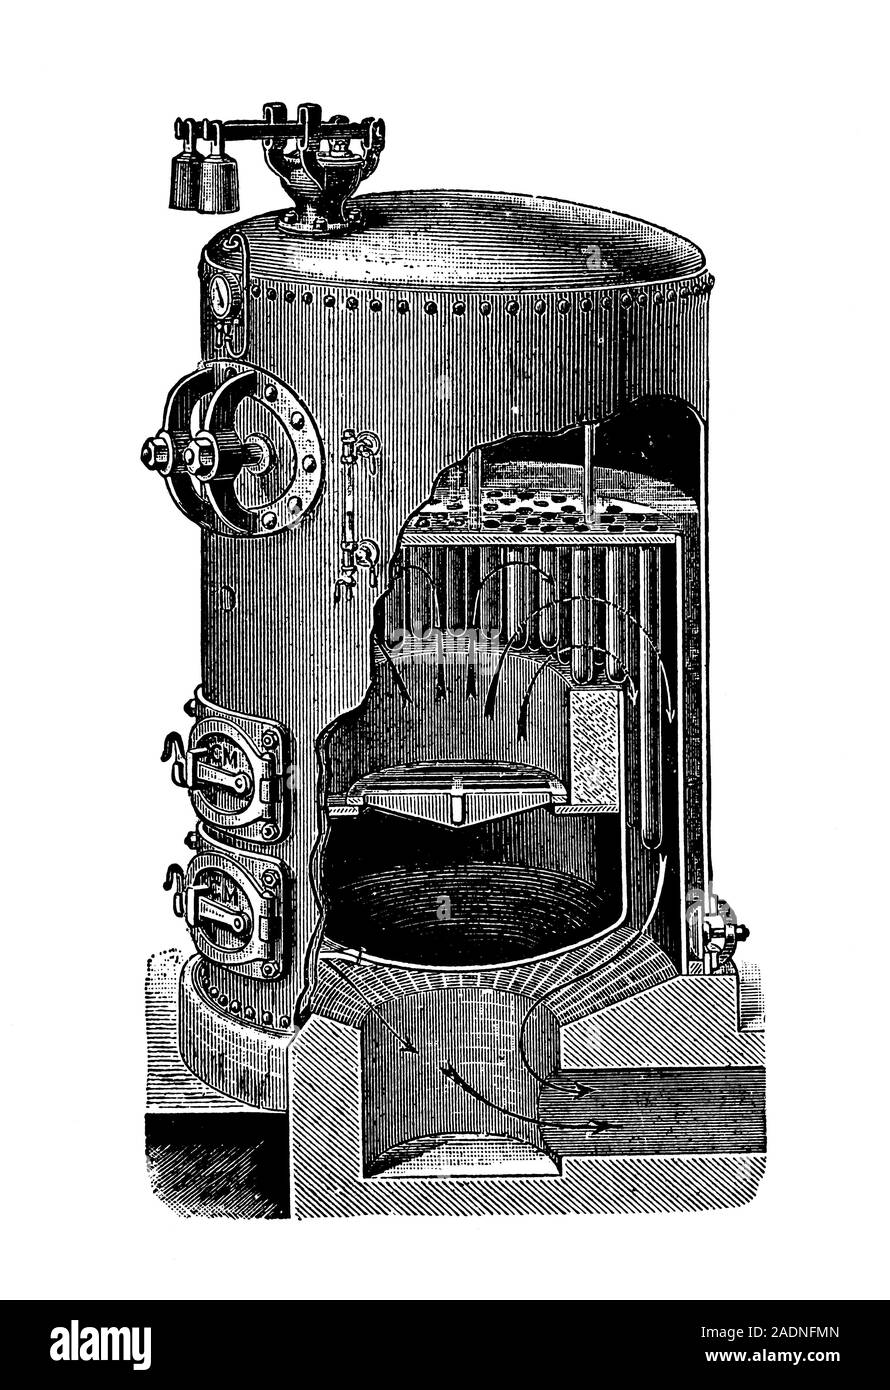 steam boilers design